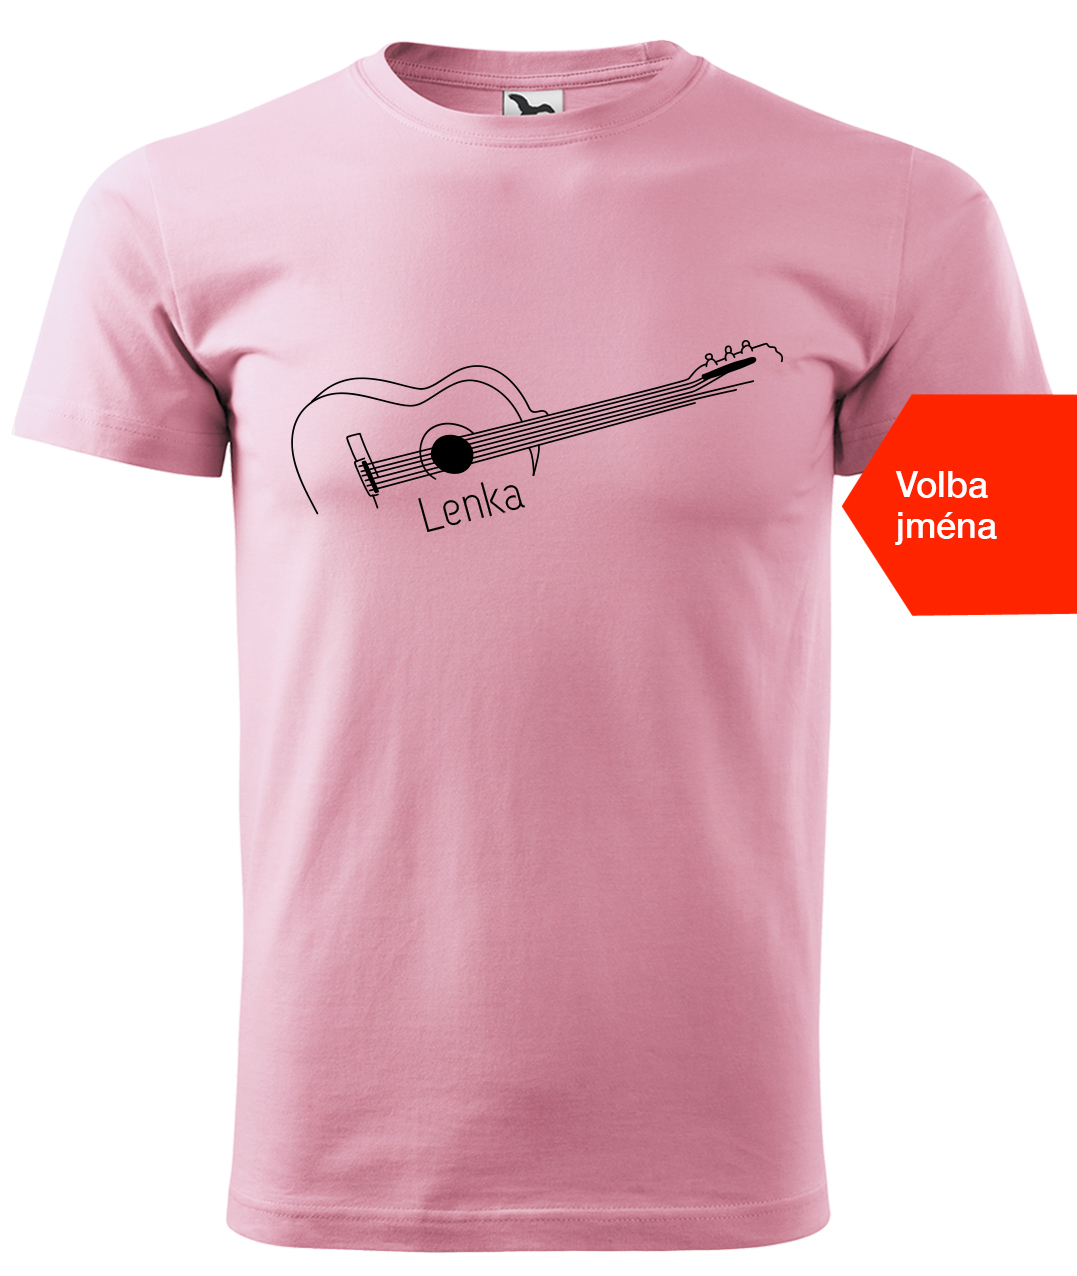 Dětské tričko s kytarou se jménem - Stylizovaná kytara Velikost: 6 let / 122 cm, Barva: Růžová (30), Délka rukávu: Krátký rukáv